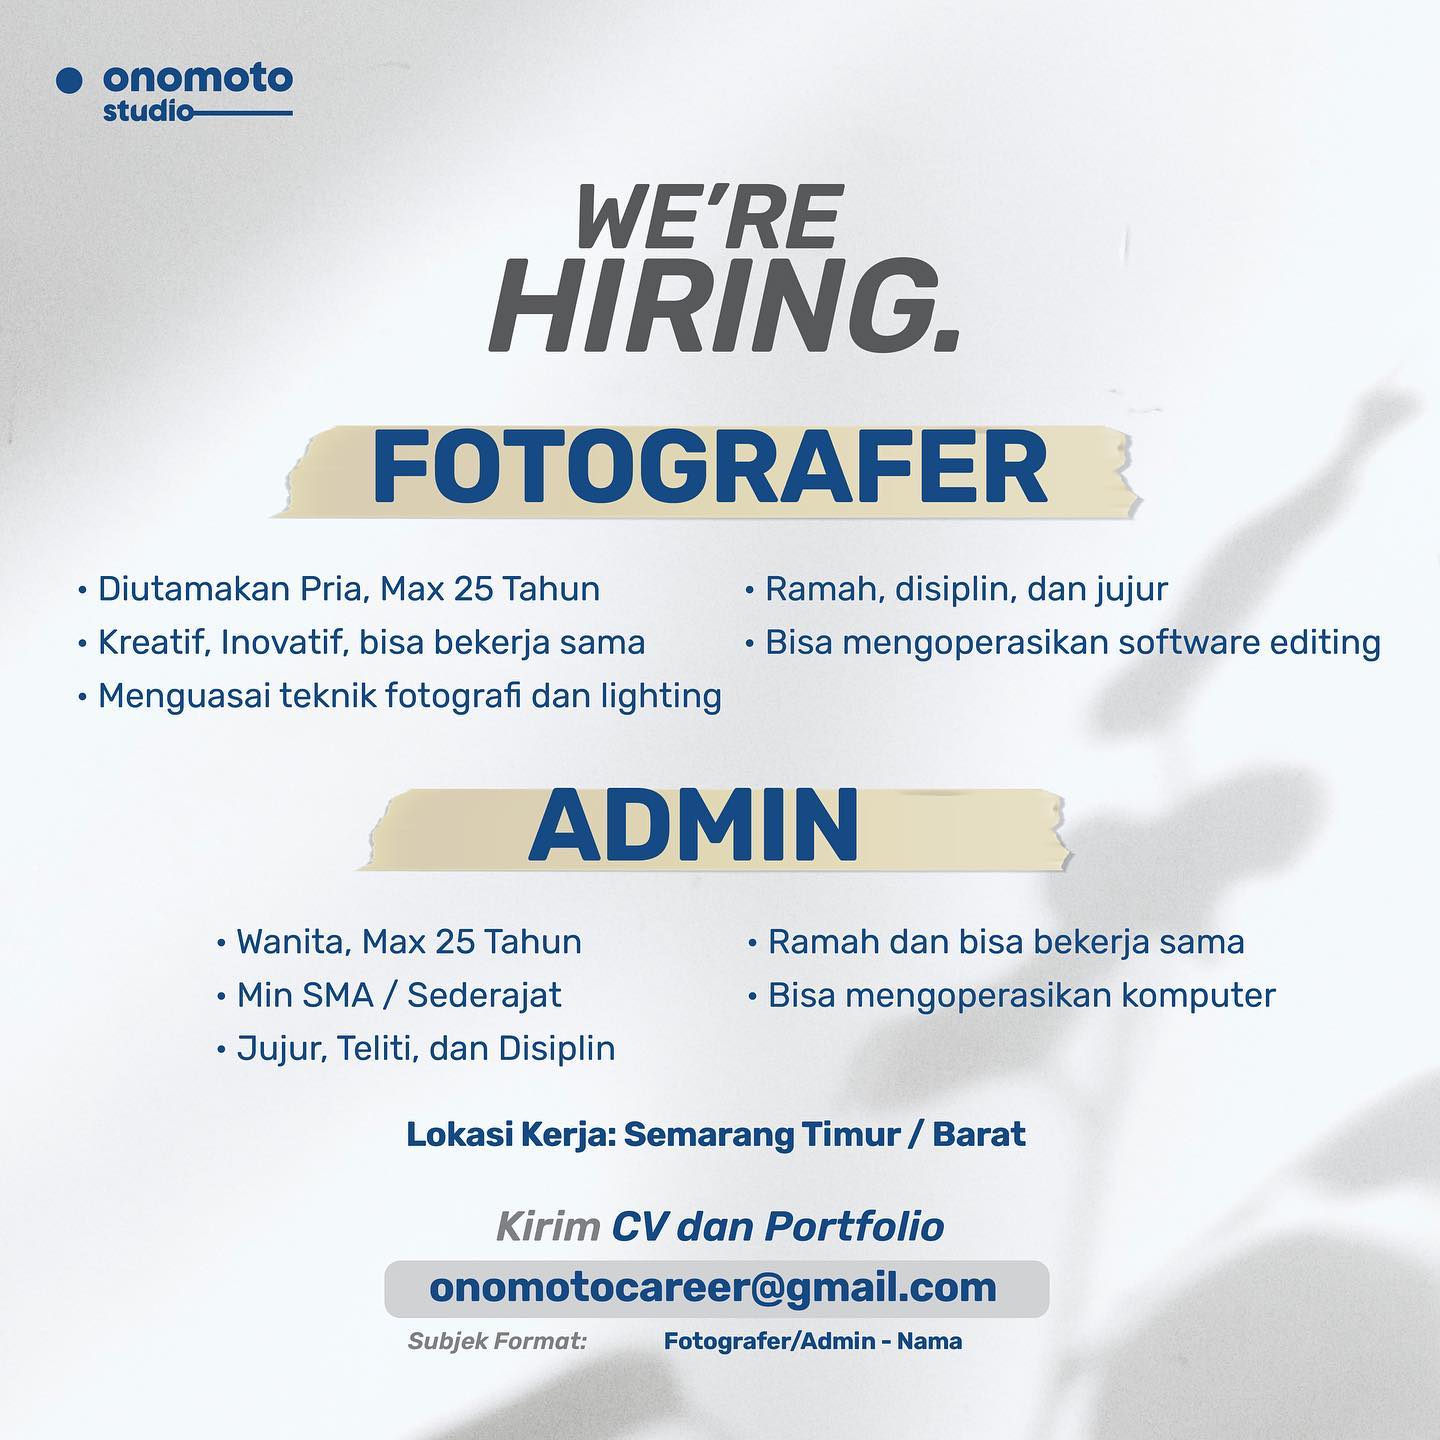 Lowongan Kerja Fotografer & Admin di Onomoto Studio Semarang